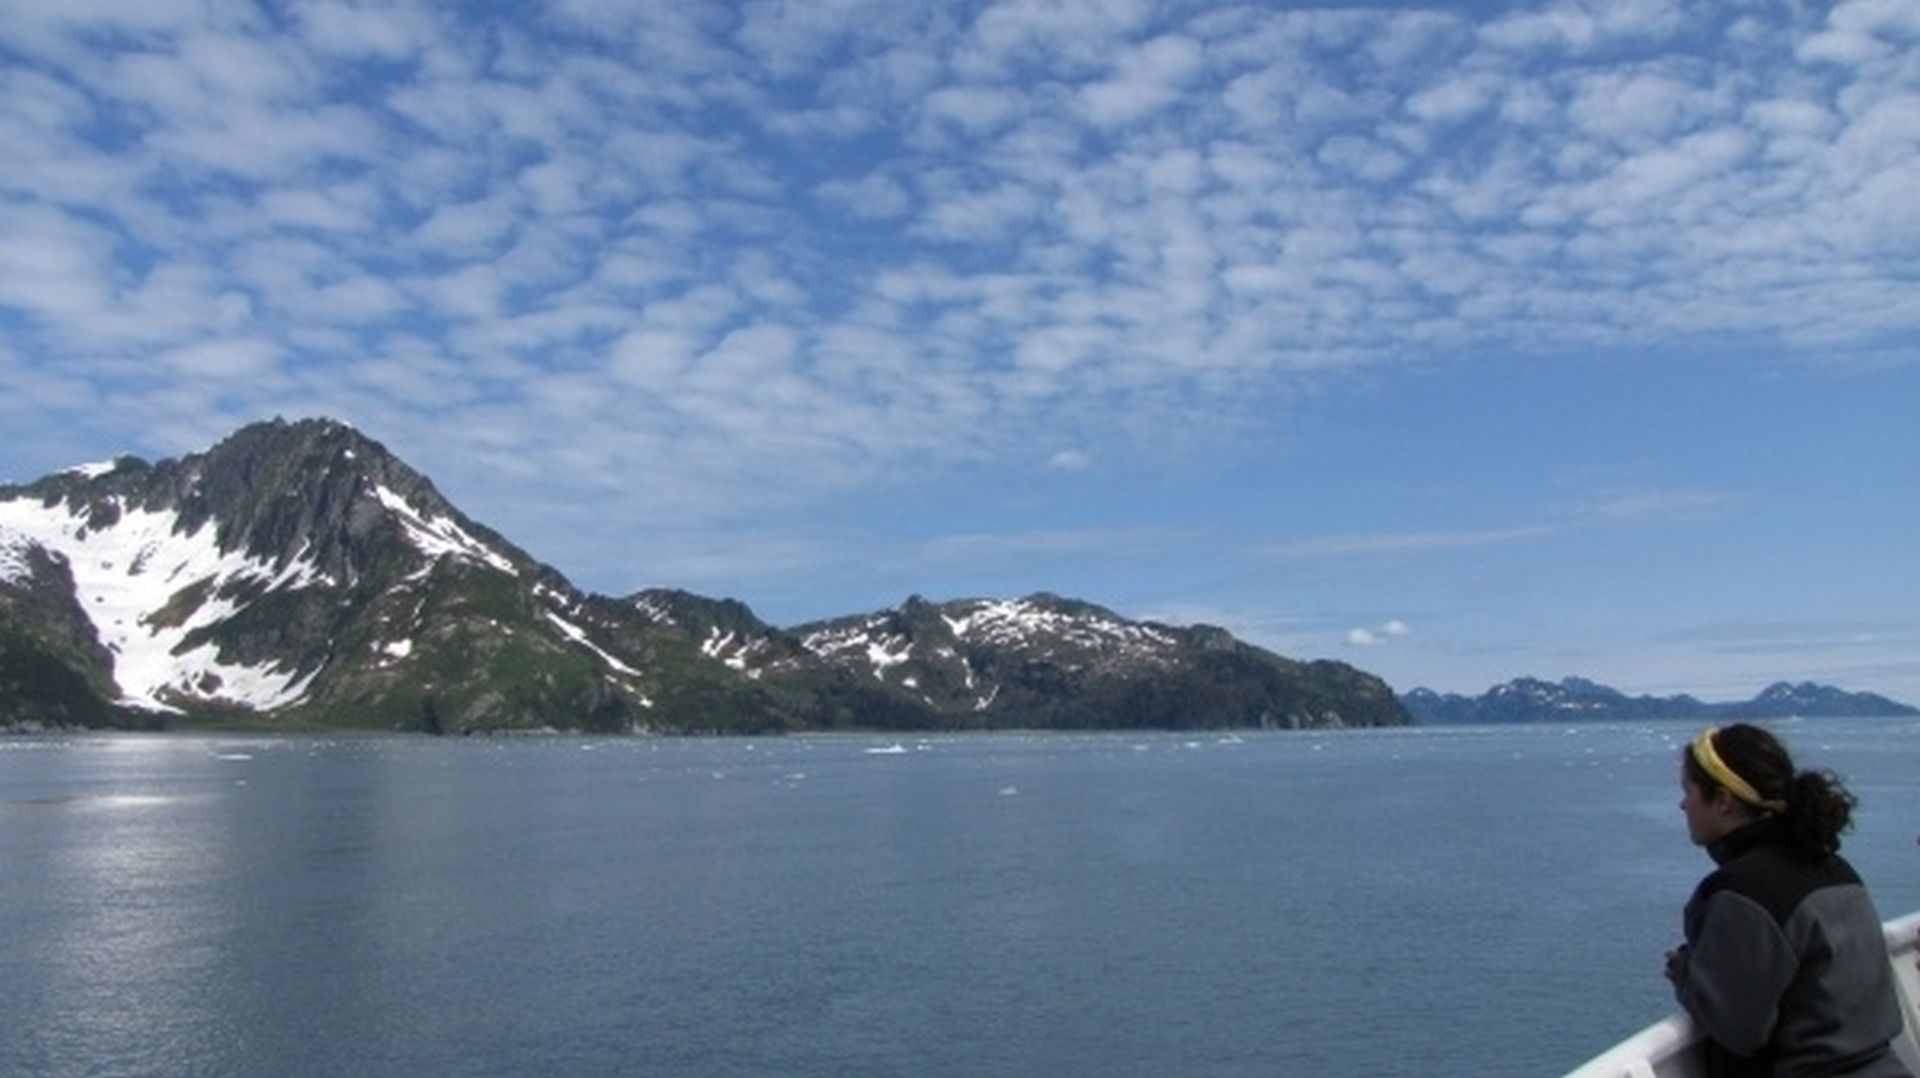 Seward Glacier Cruise - Freya scans her domain